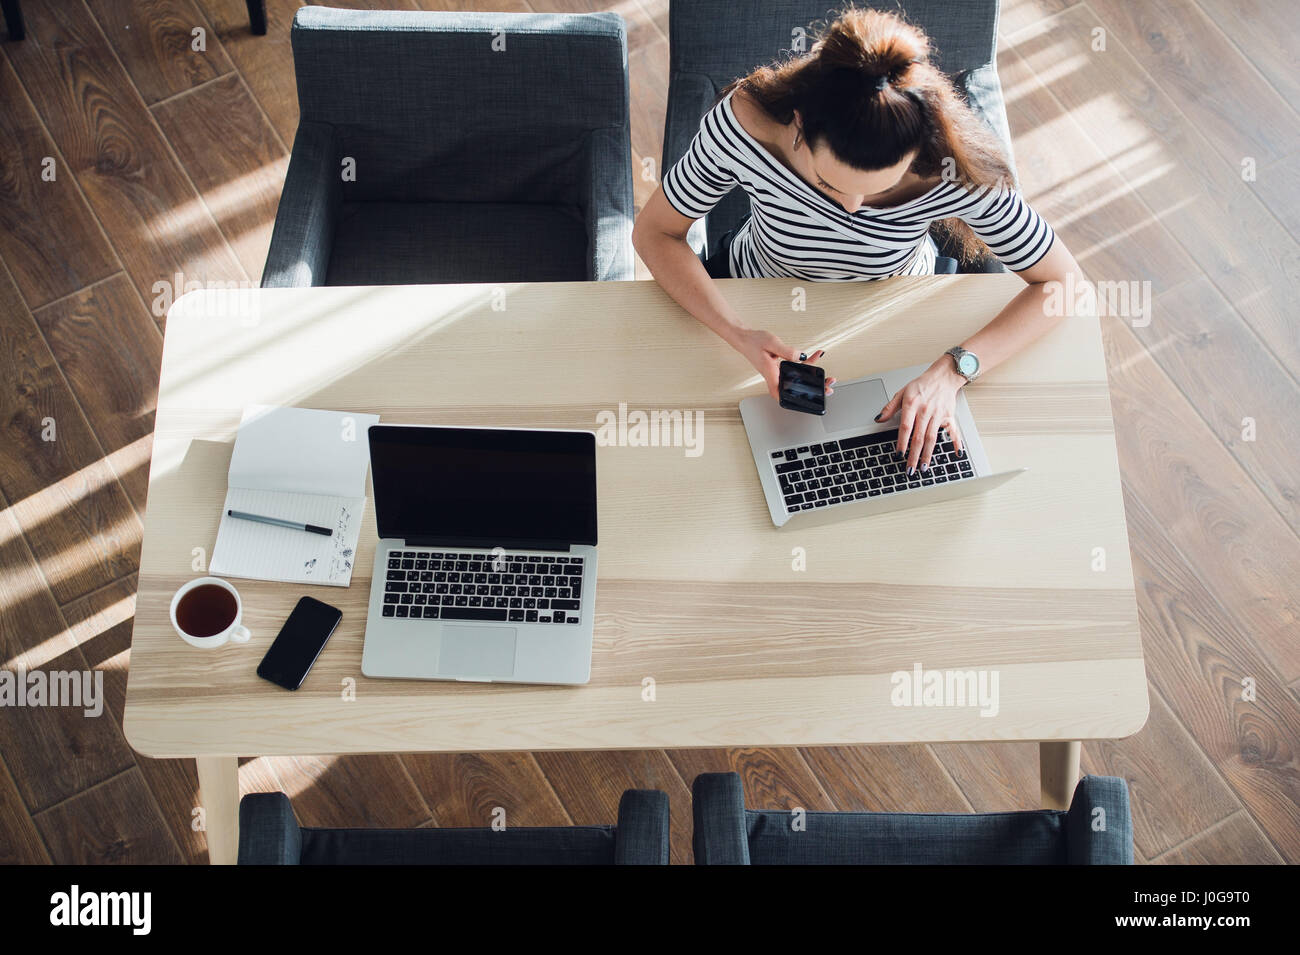 Vista superiore della femmina usando il suo computer portatile a un cafe'. Tettuccio di colpo di giovane donna seduta al tavolo con una tazza di caffè e telefono cellulare navigando in rete sul suo computer portatile. Foto Stock